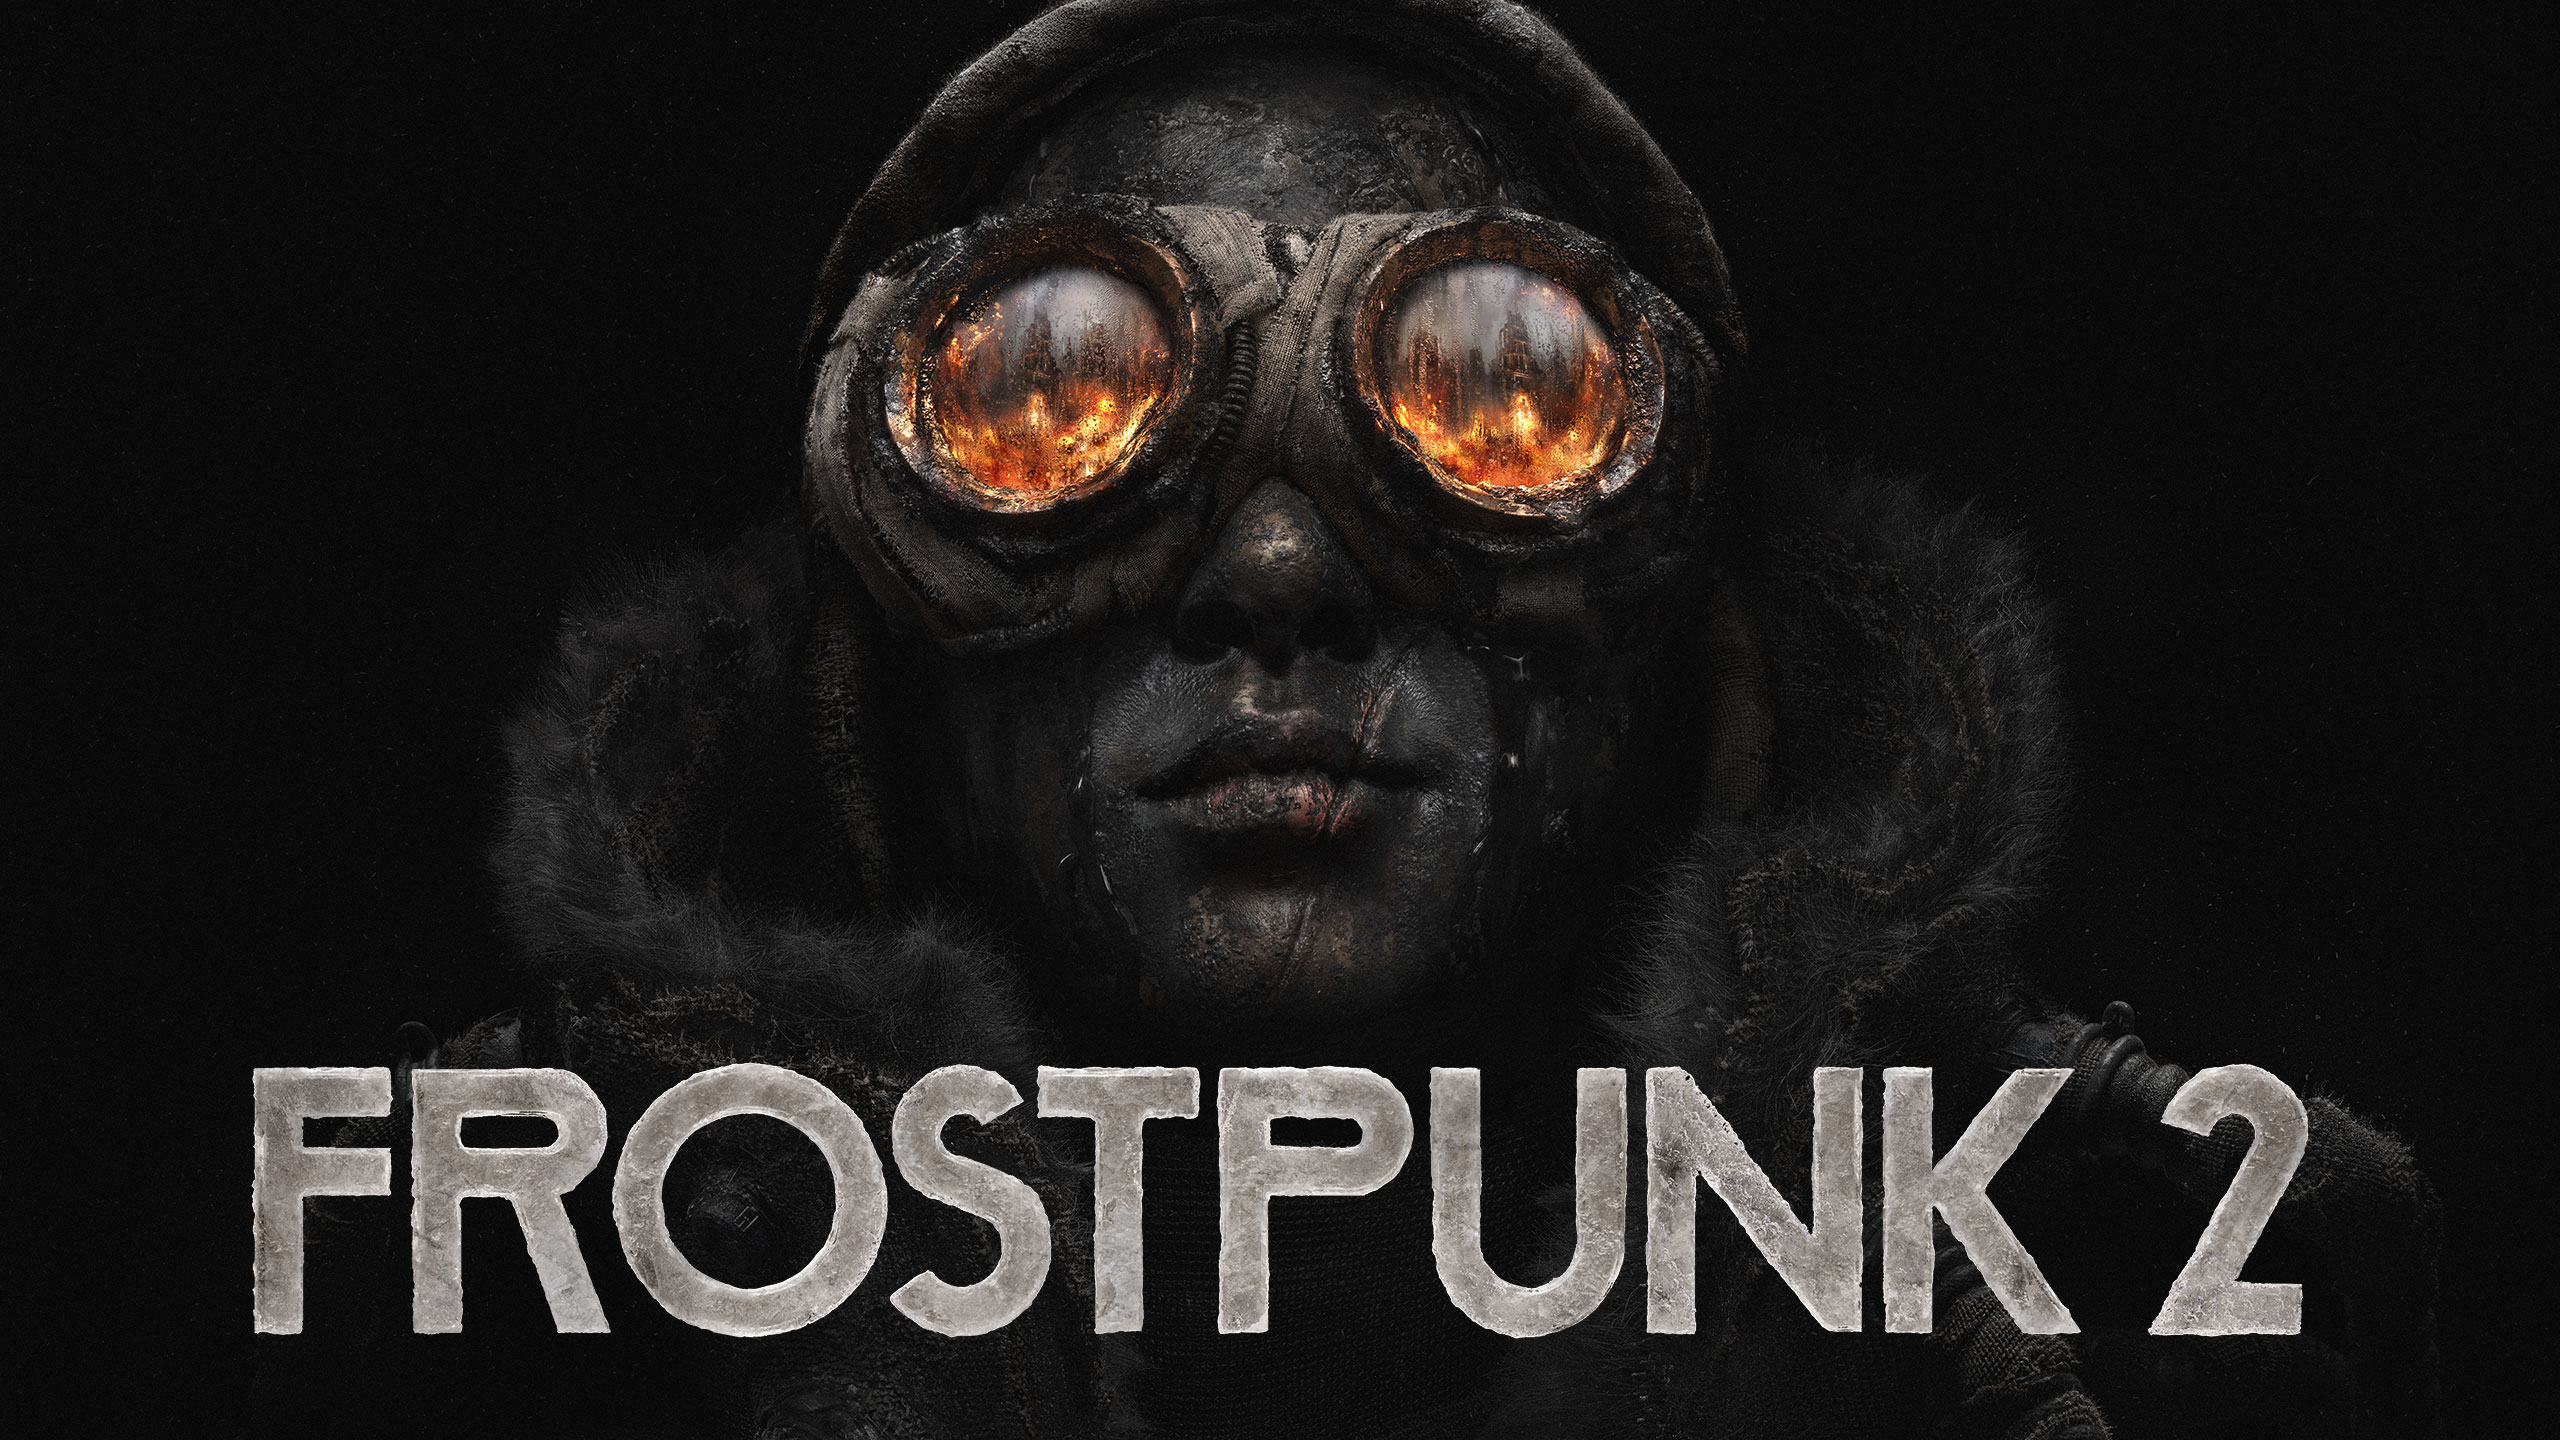 Frostpunk 2 wird am 25. Juli für PC erscheinen, andere Plattformen sind nicht bekannt